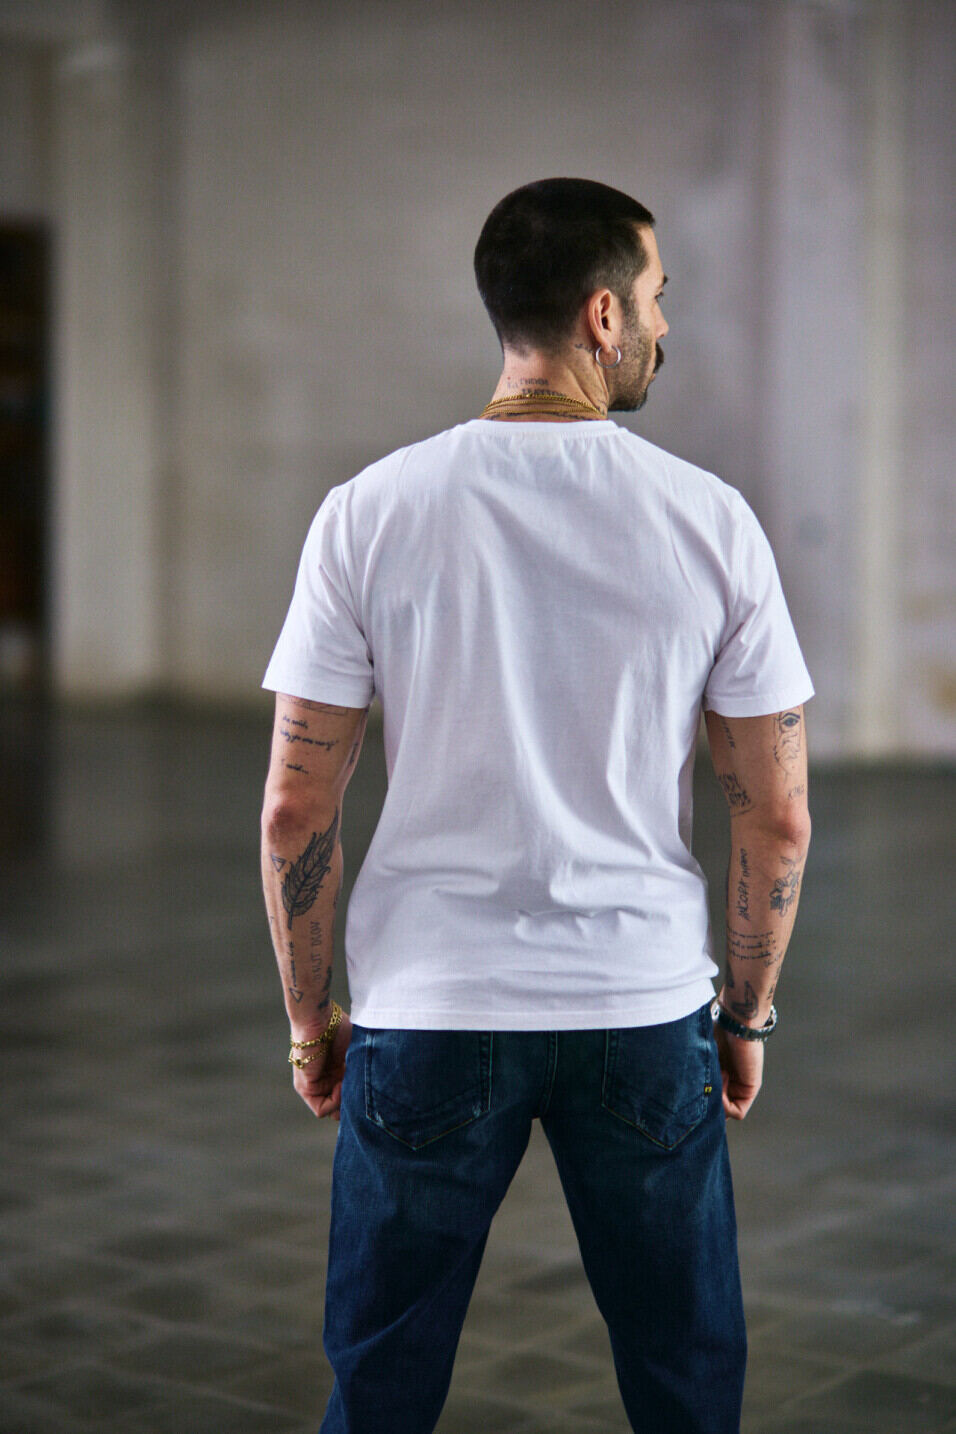 T-shirt manches courtes Homme Ivander Desert Ride Bright white | Freeman T. Porter